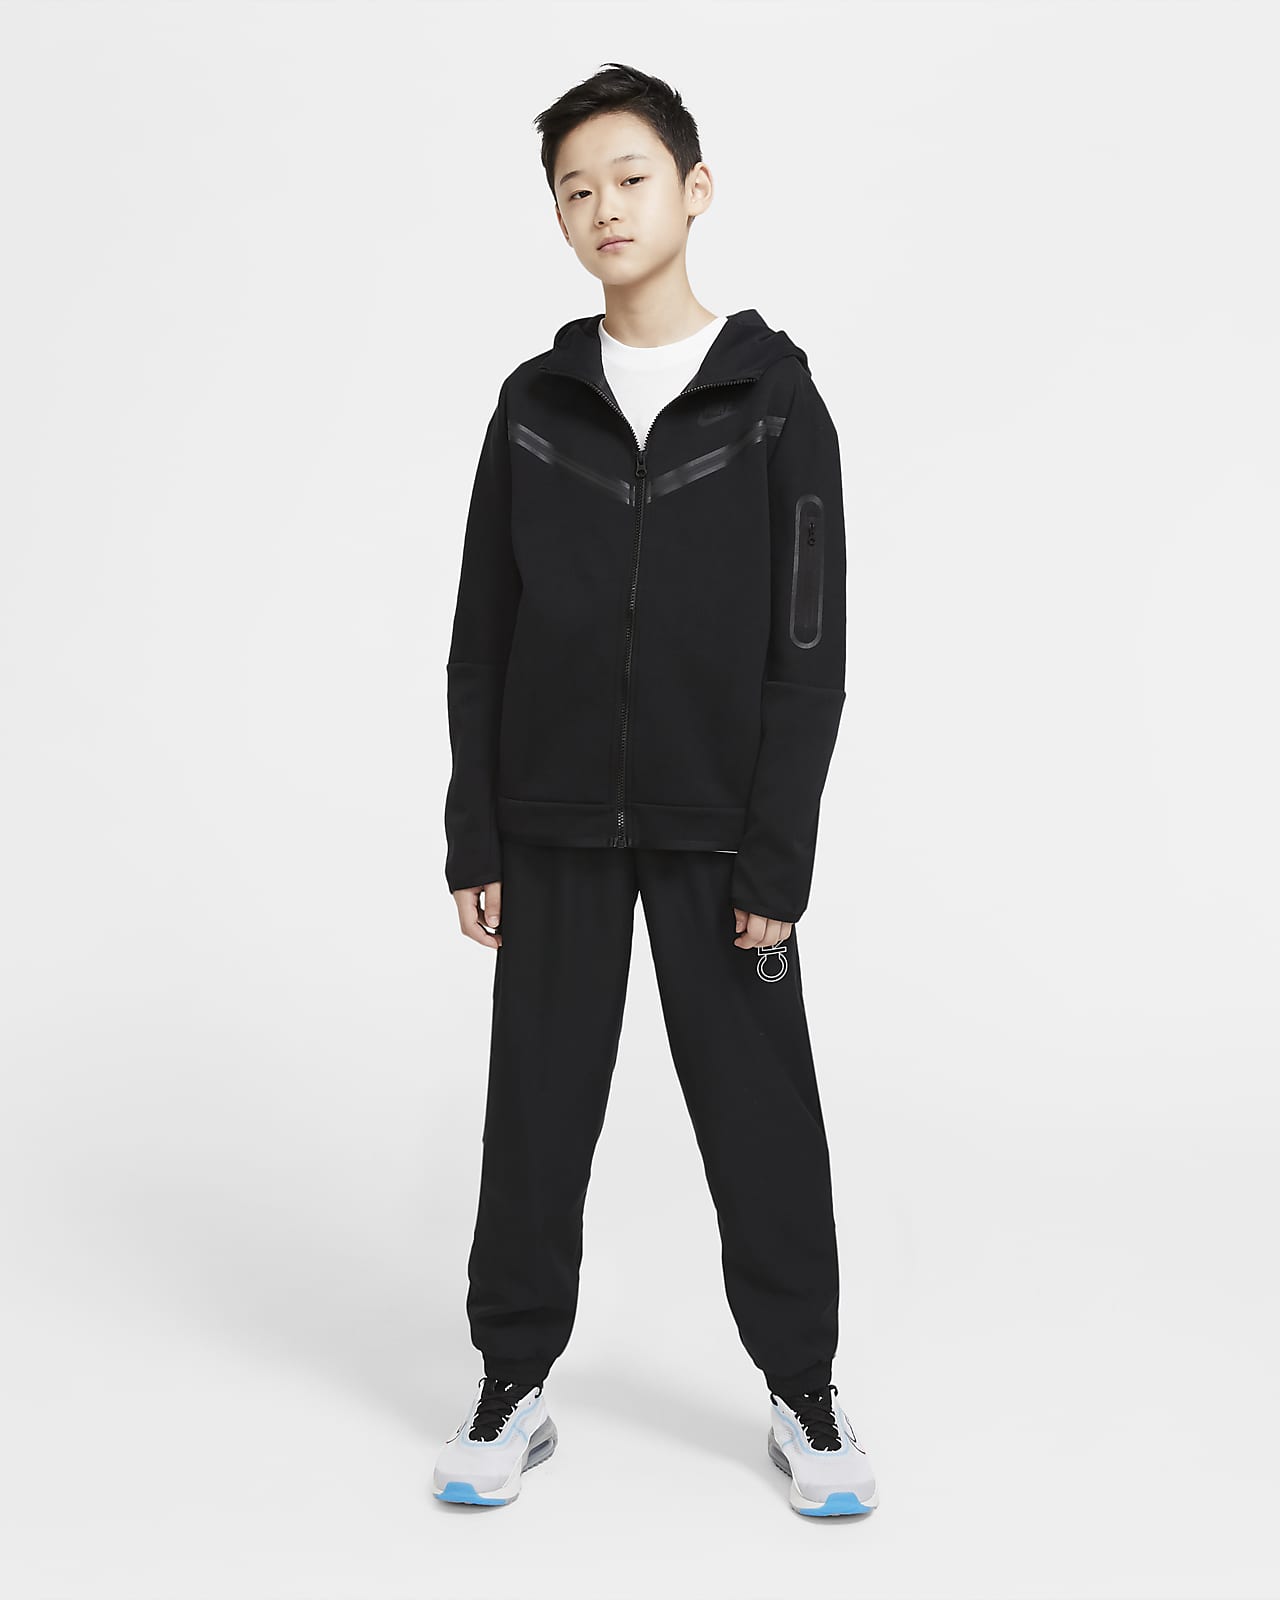 kruising eetbaar ga verder Nike Sportswear Tech Fleece Older Kids' (Boys') Full-Zip Hoodie. Nike LU